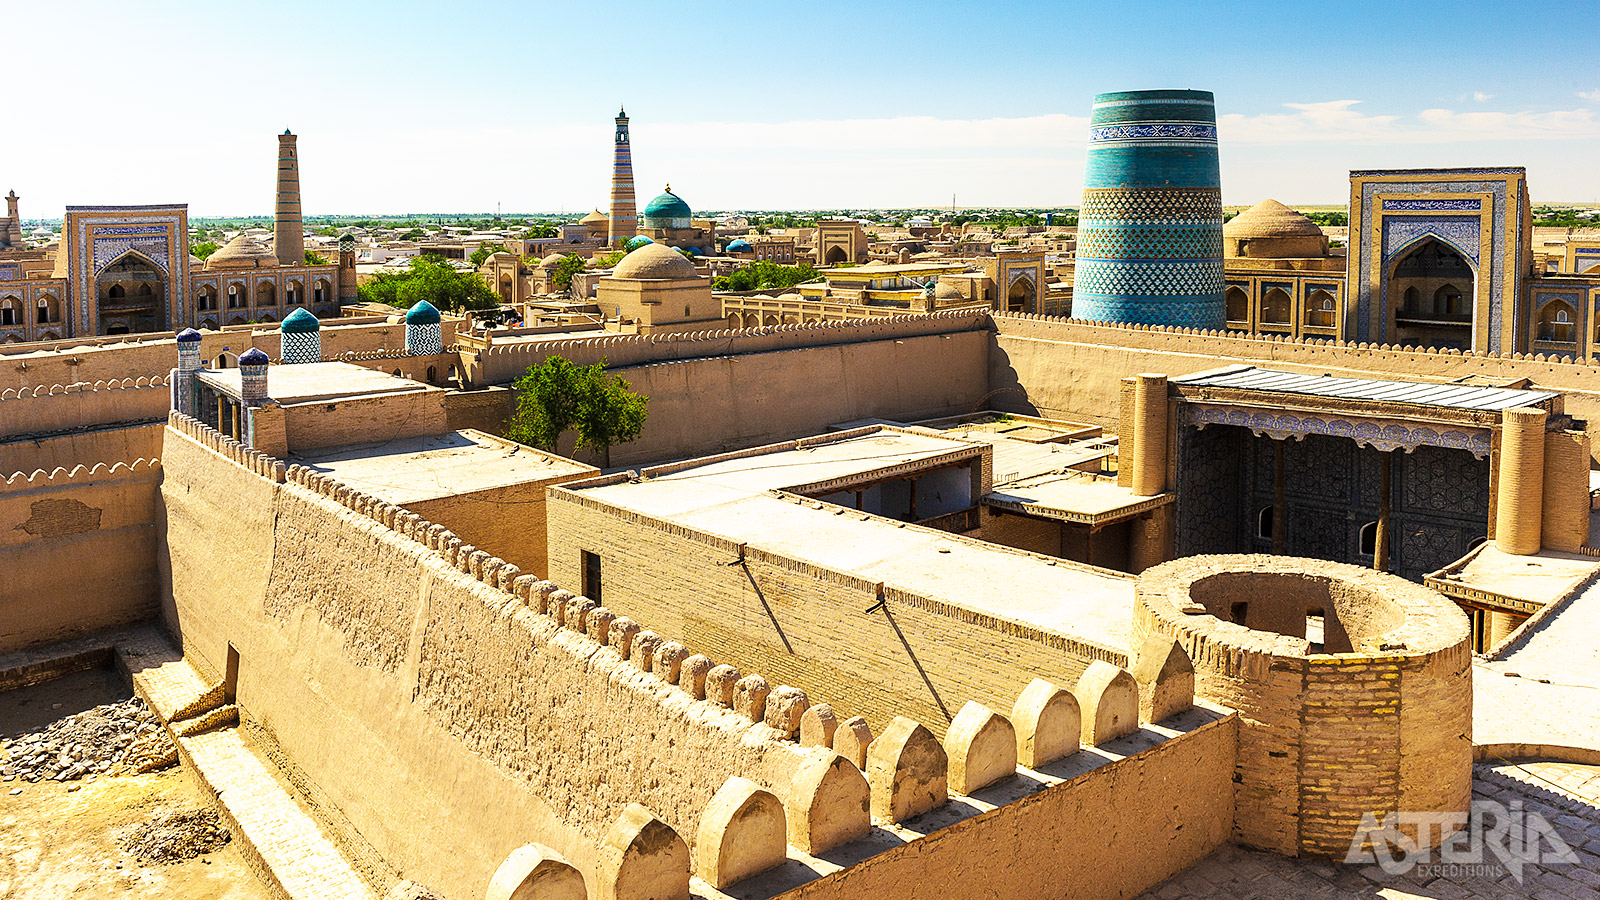 De oude binnenstad van Khiva is één groot openluchtmuseum met moskeeën, mausoleums en musea